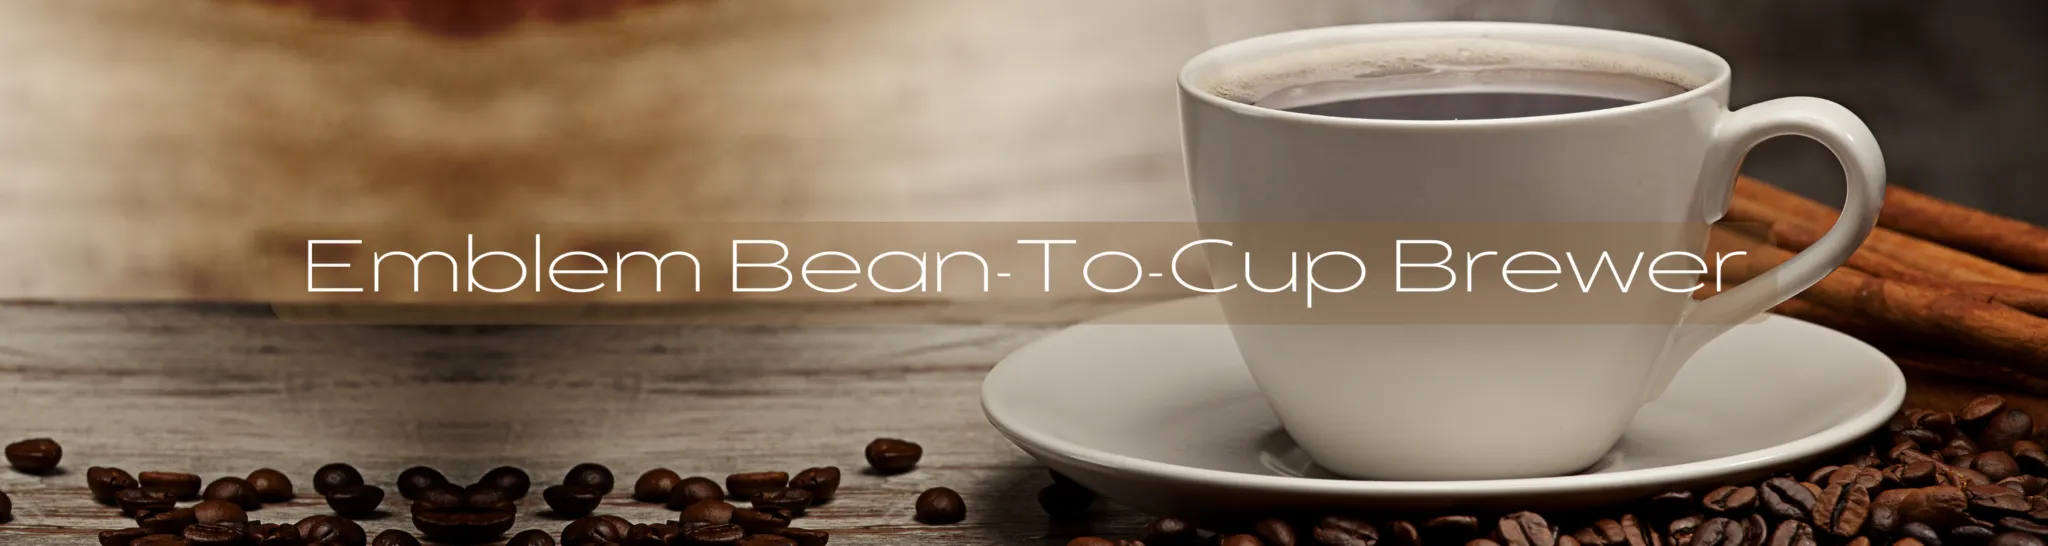 Emblem-Bean-To-Cup-Brewer-Banner-2048x546